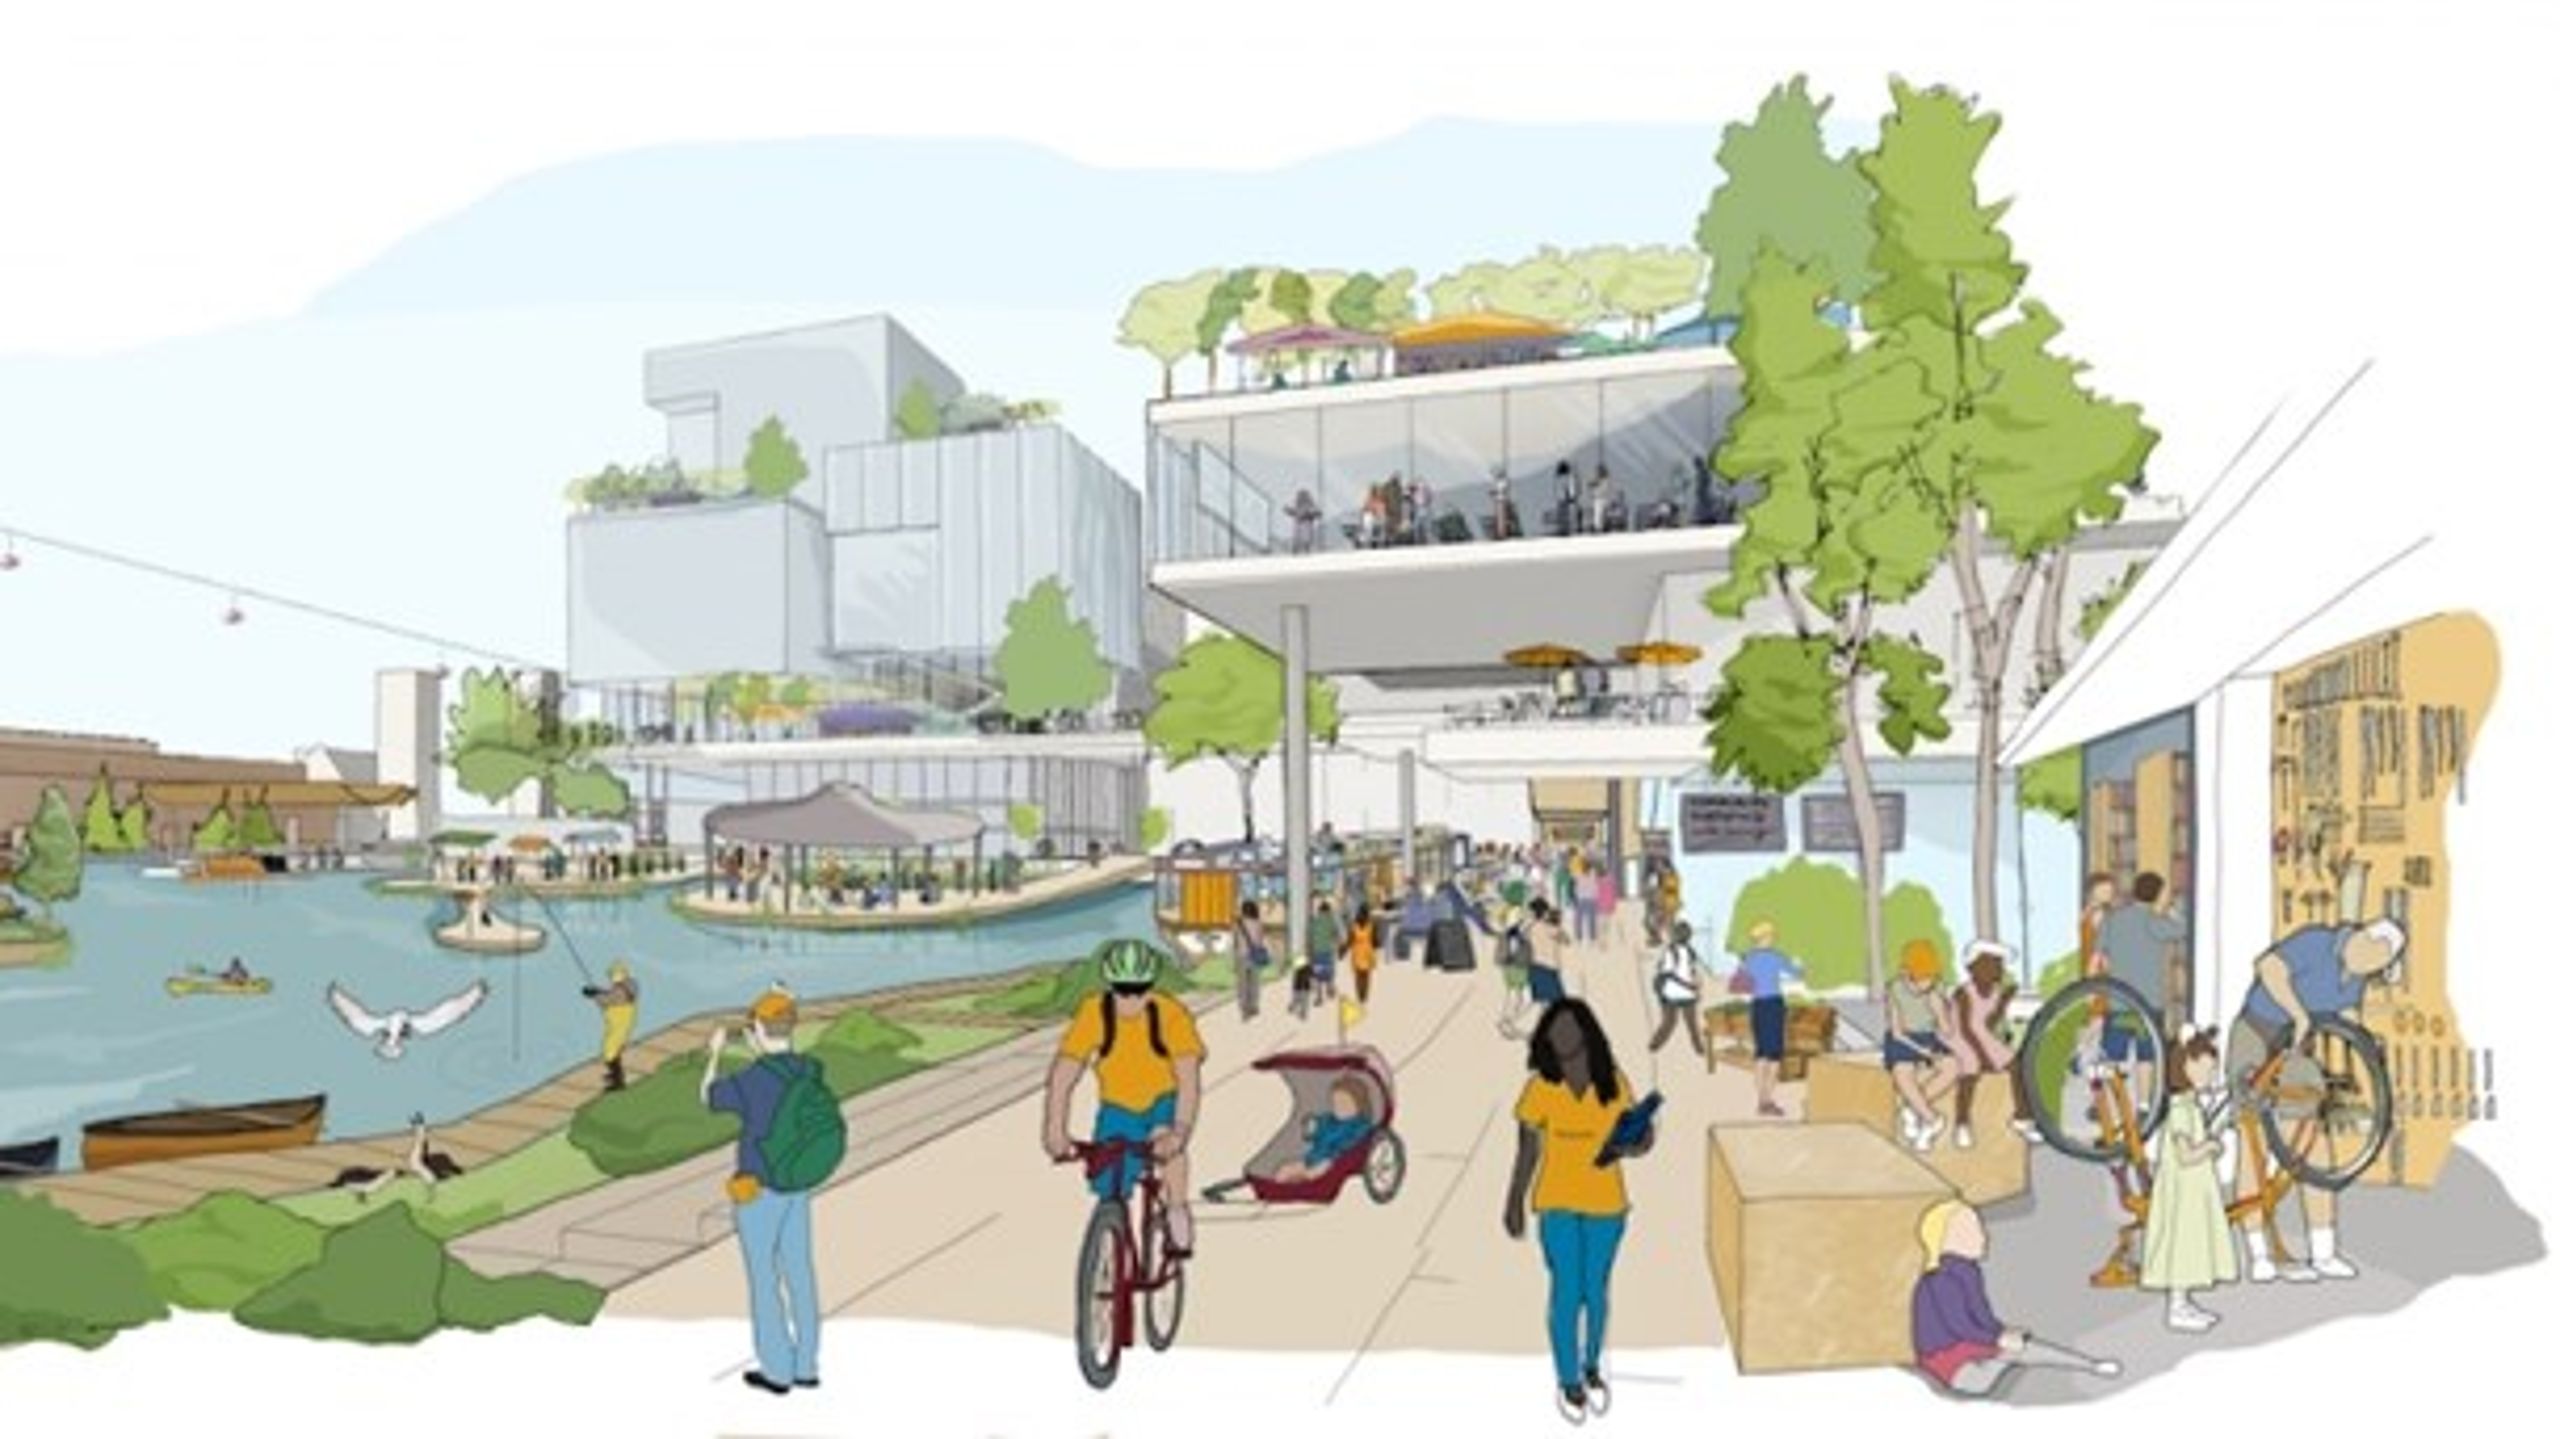 Vision for det offentlige byrum i den nye bydel Quayside i den østlige del af Torontos havnefront.